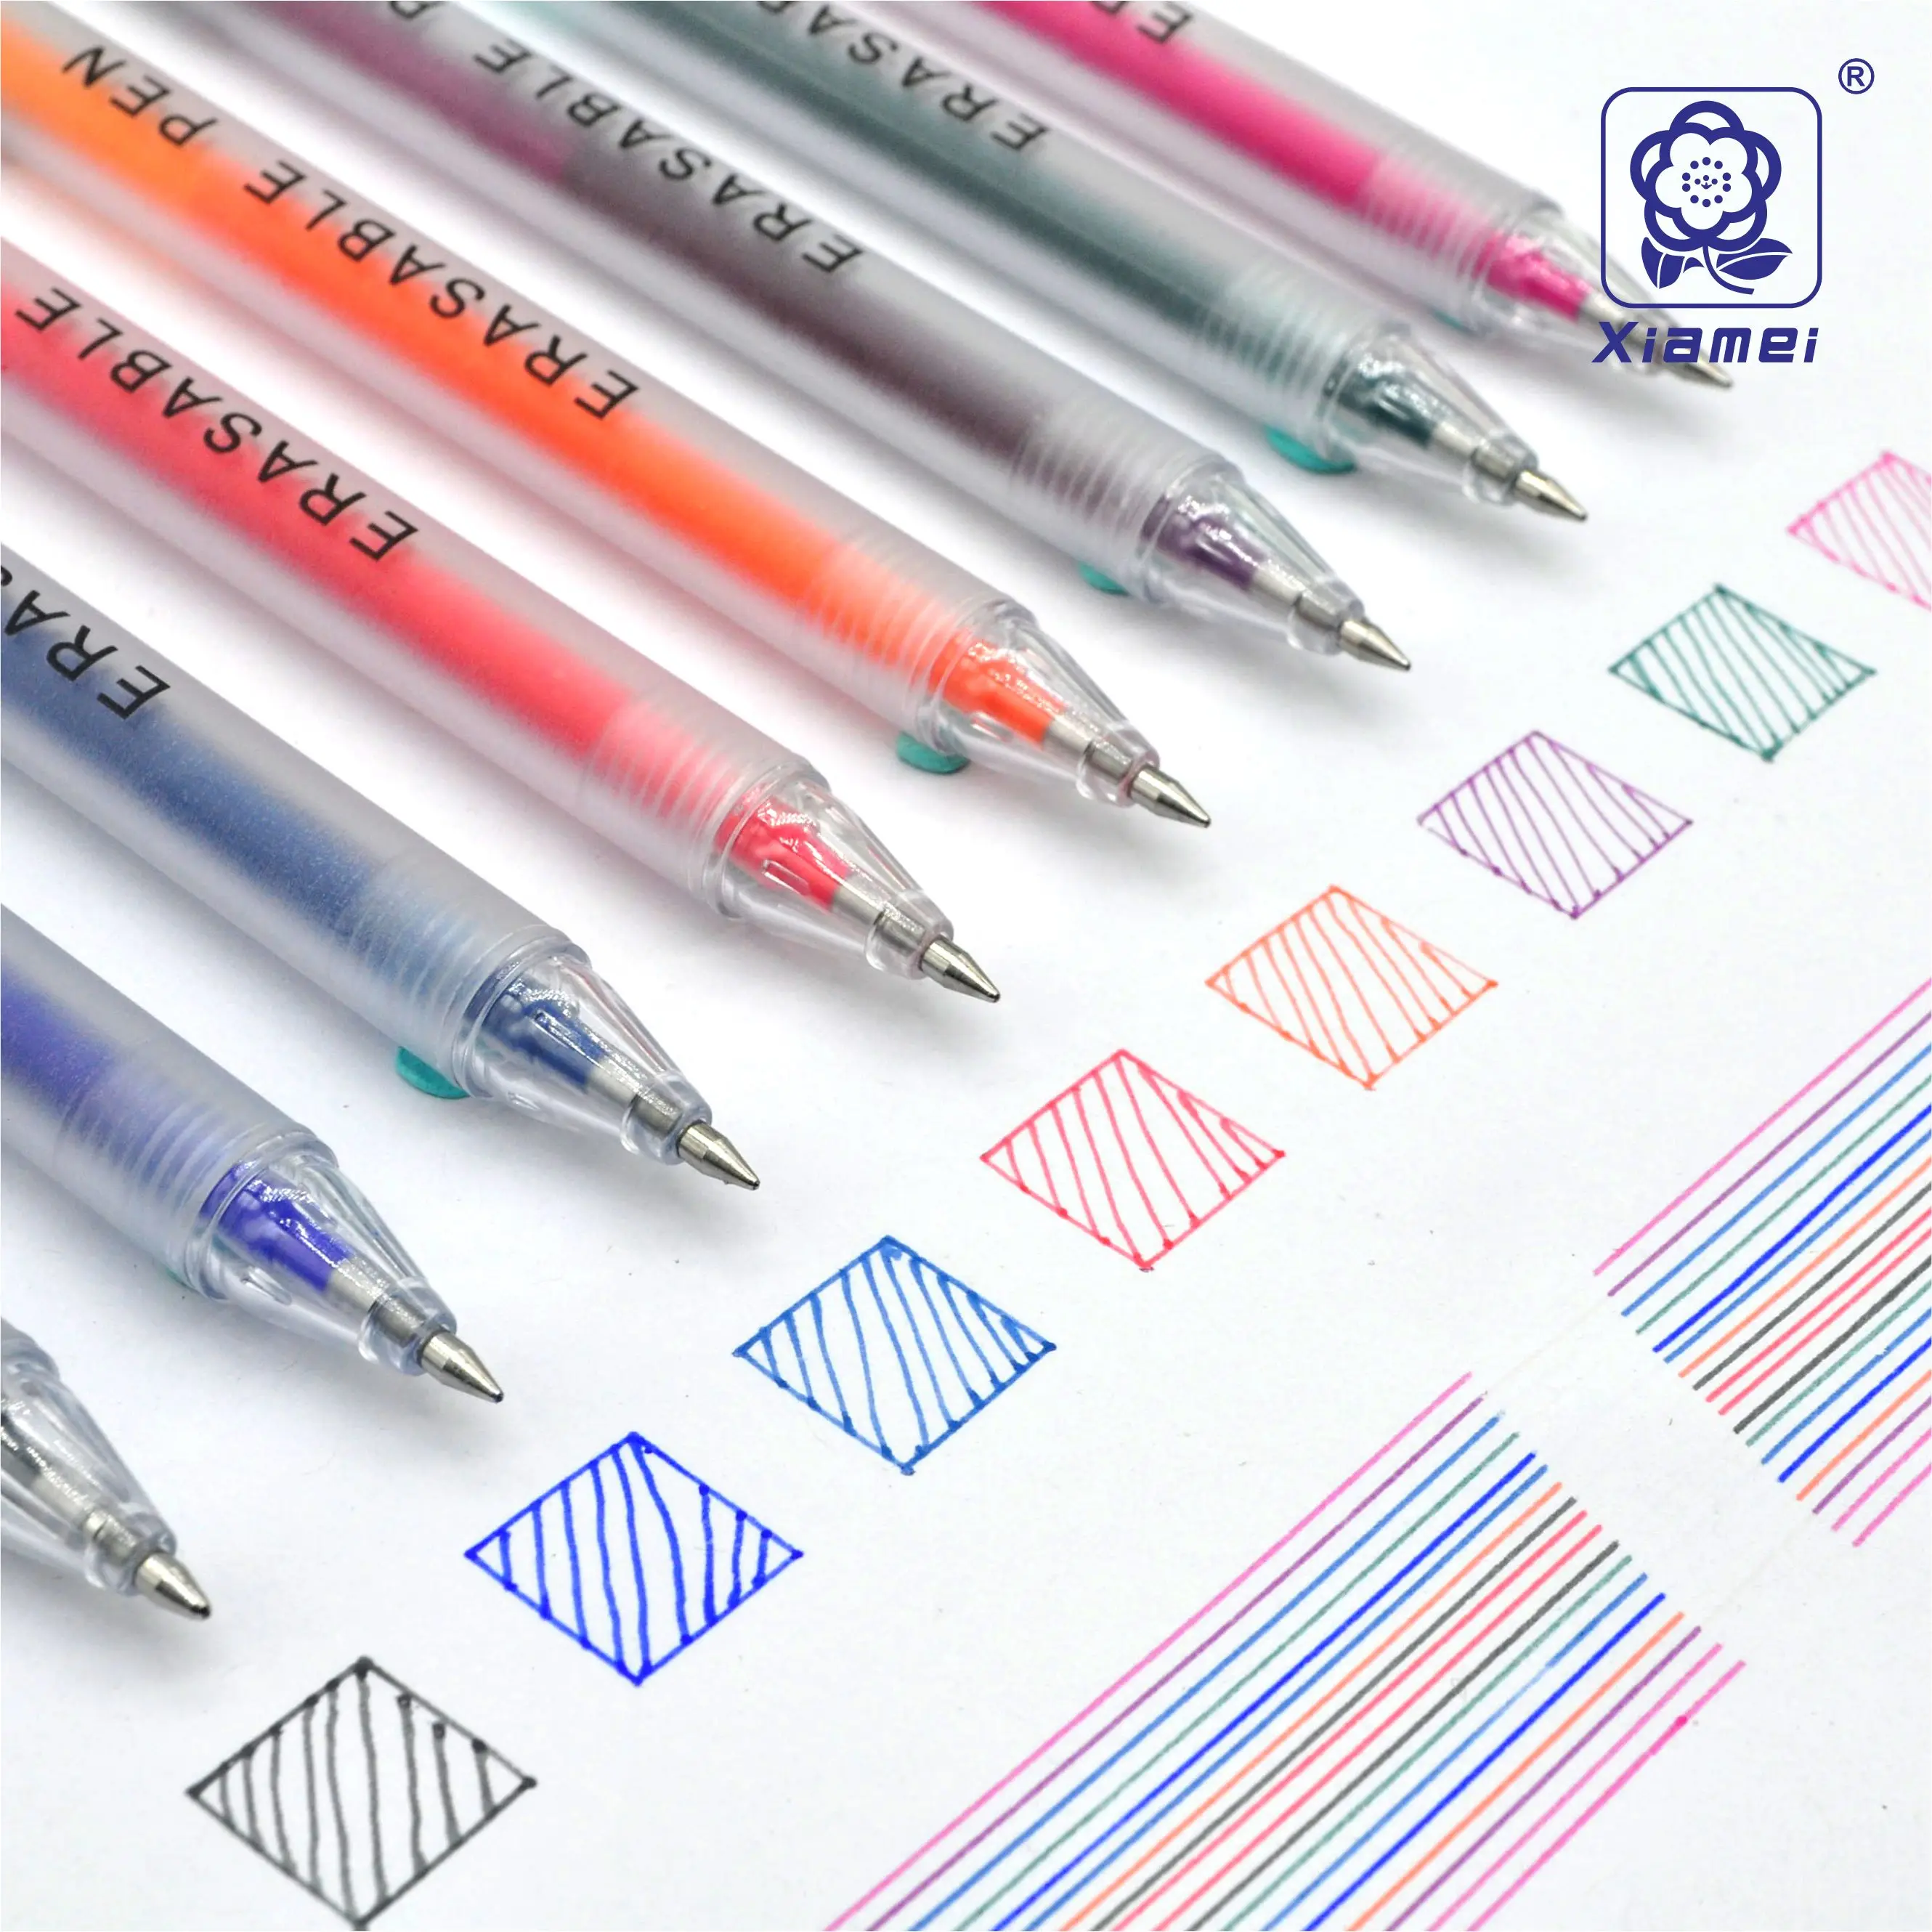 Xiamei 2 шт стираемая ручка 8 цветов 0,5 мм Волшебная гелевая ручка для школы офиса канцелярские принадлежности для студентов